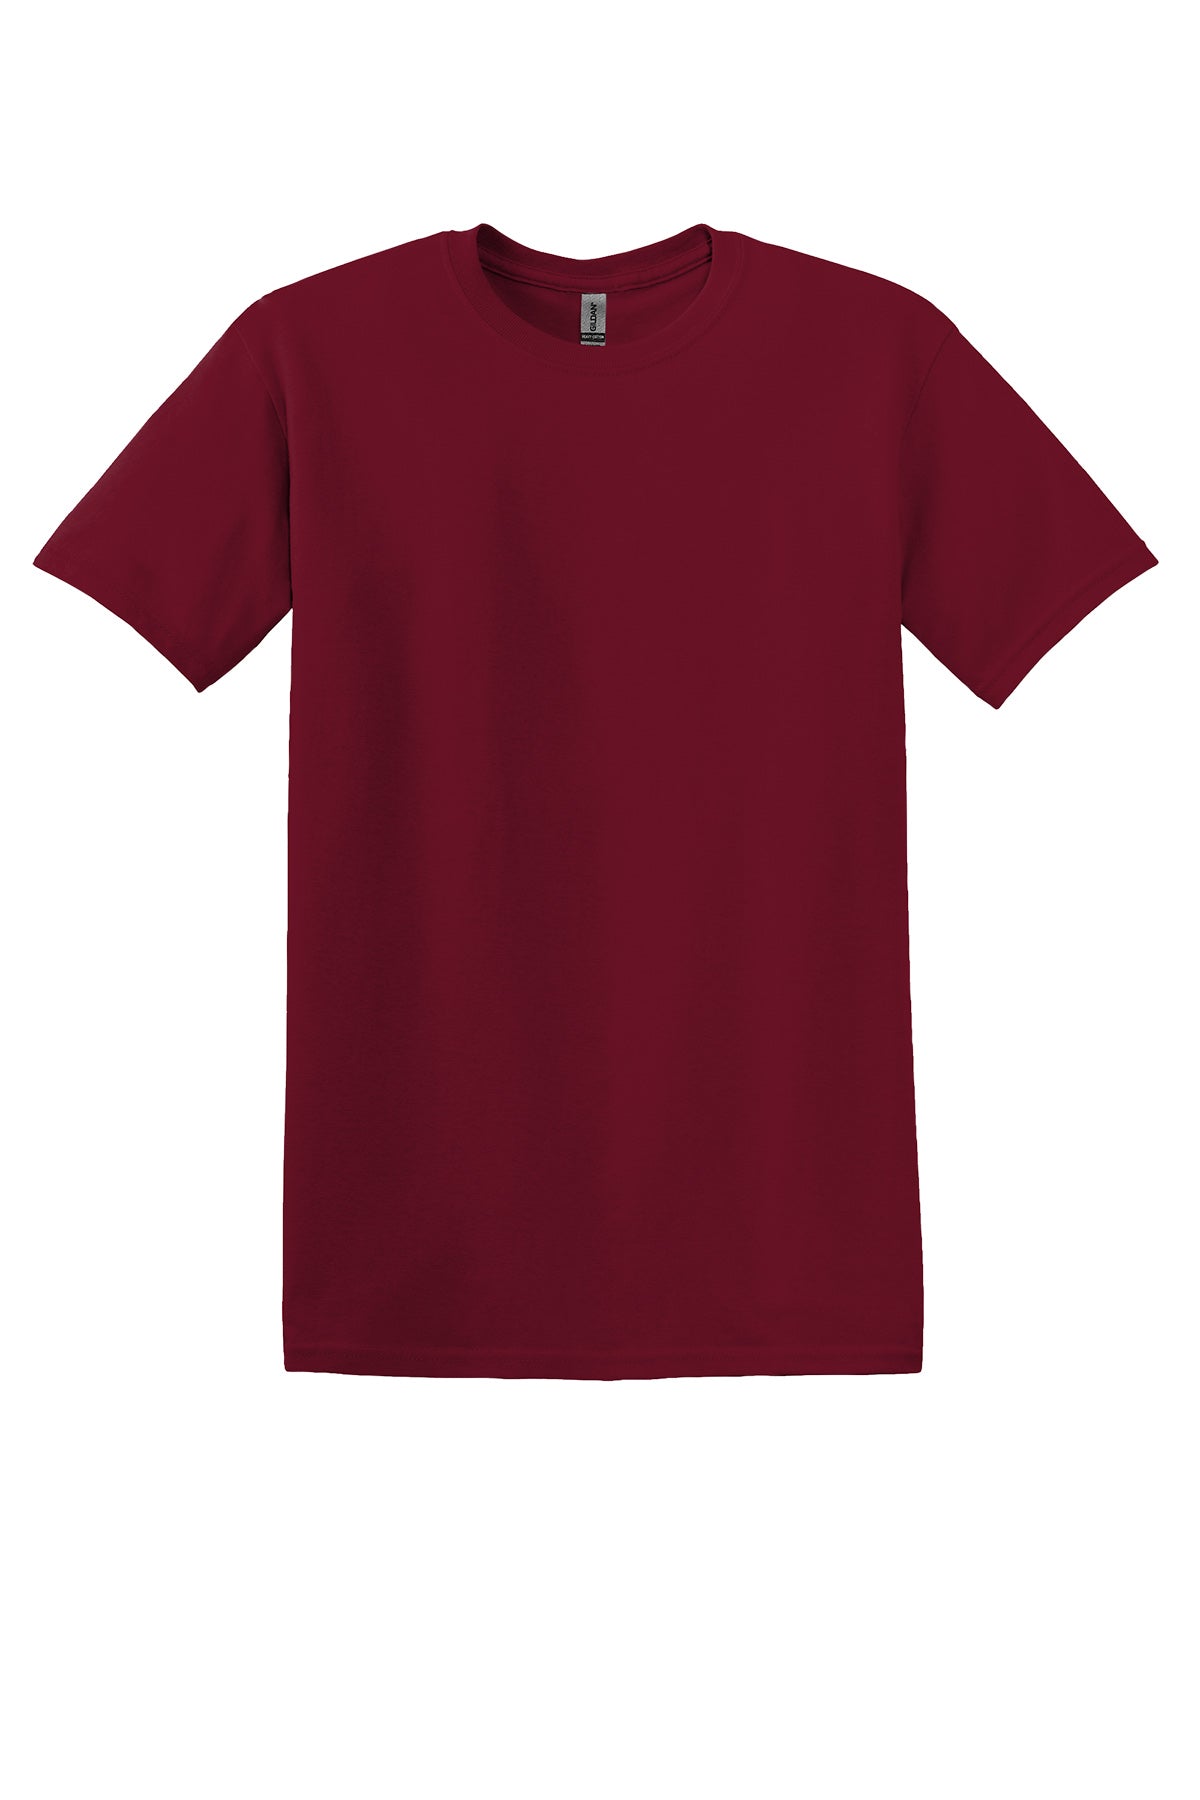 Gildan 5000B Youth T-Shirt Yth X-Small / Cardinal Red